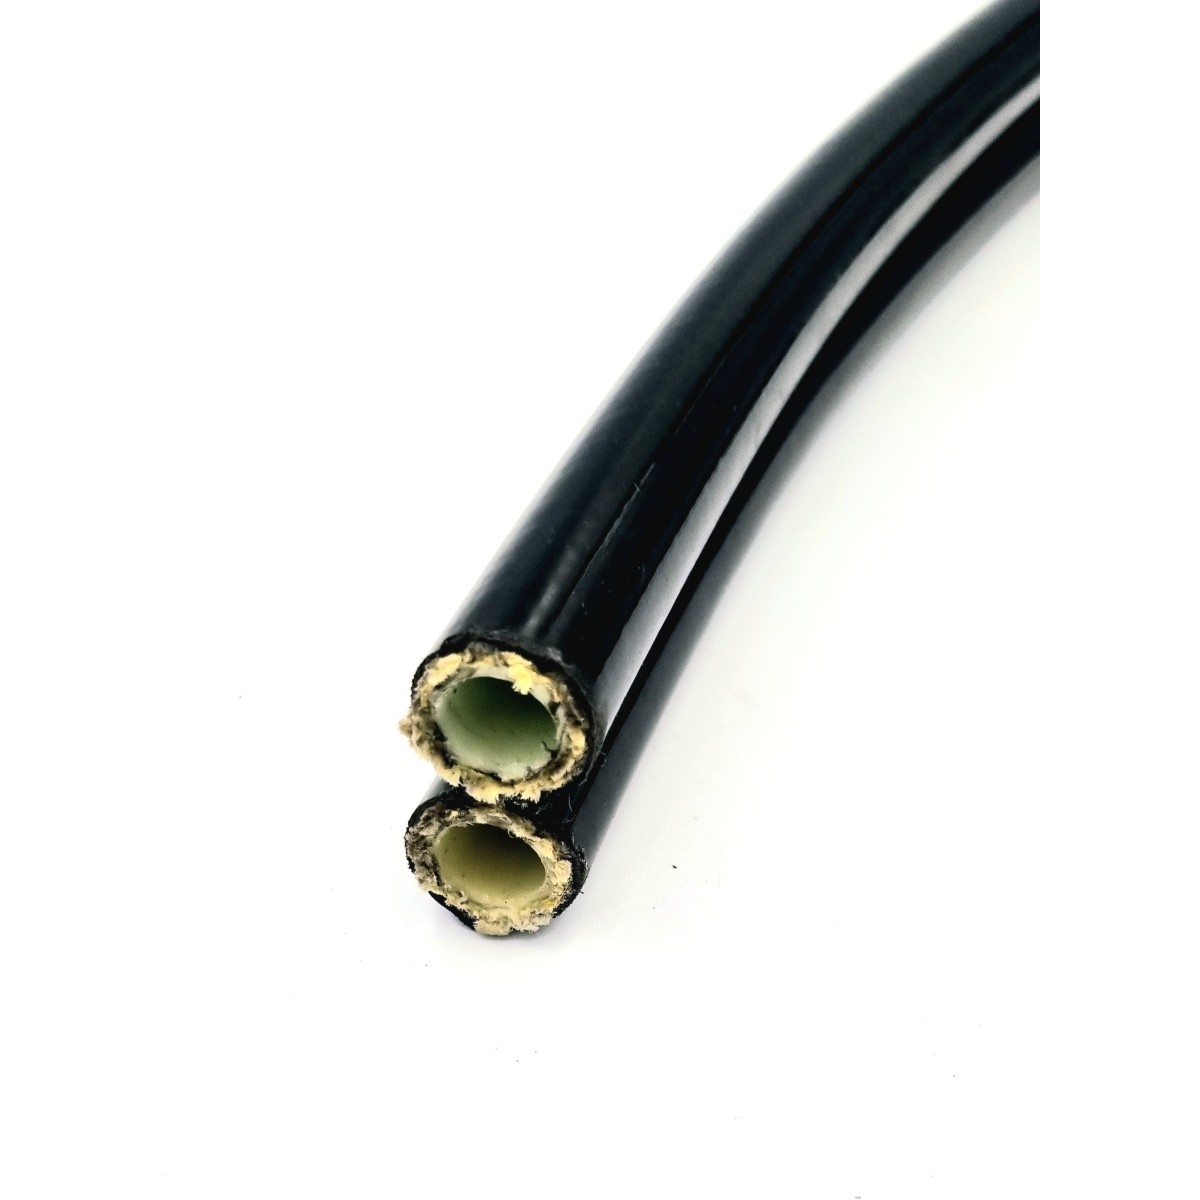 Câble électrique remorque tuyau flexible 13 fils prix 1 Mètre